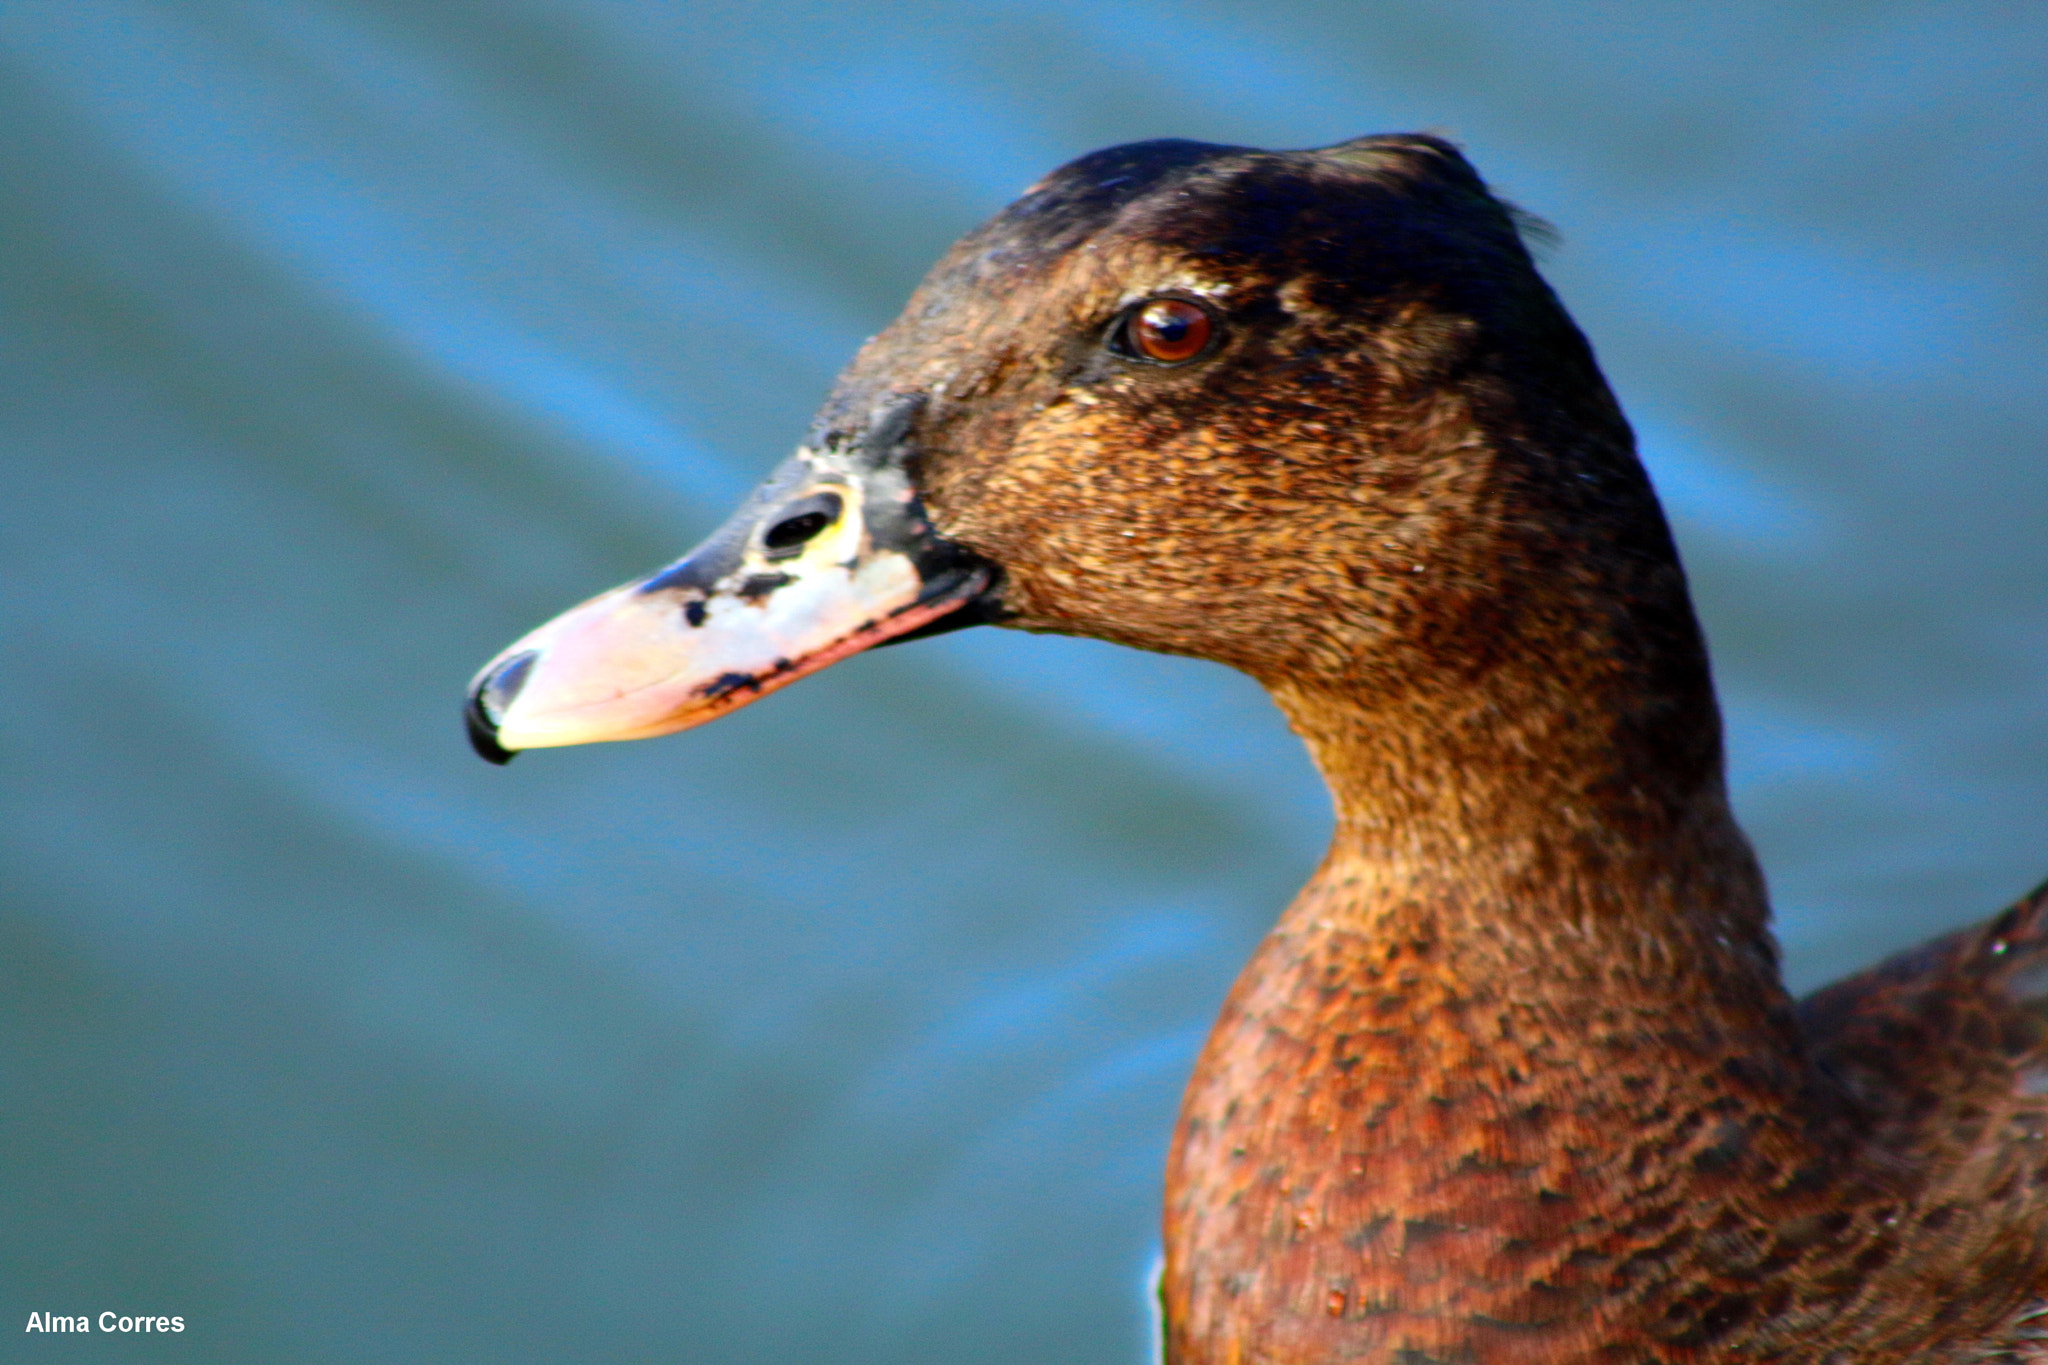 Canon EOS 70D sample photo. Duck face photography